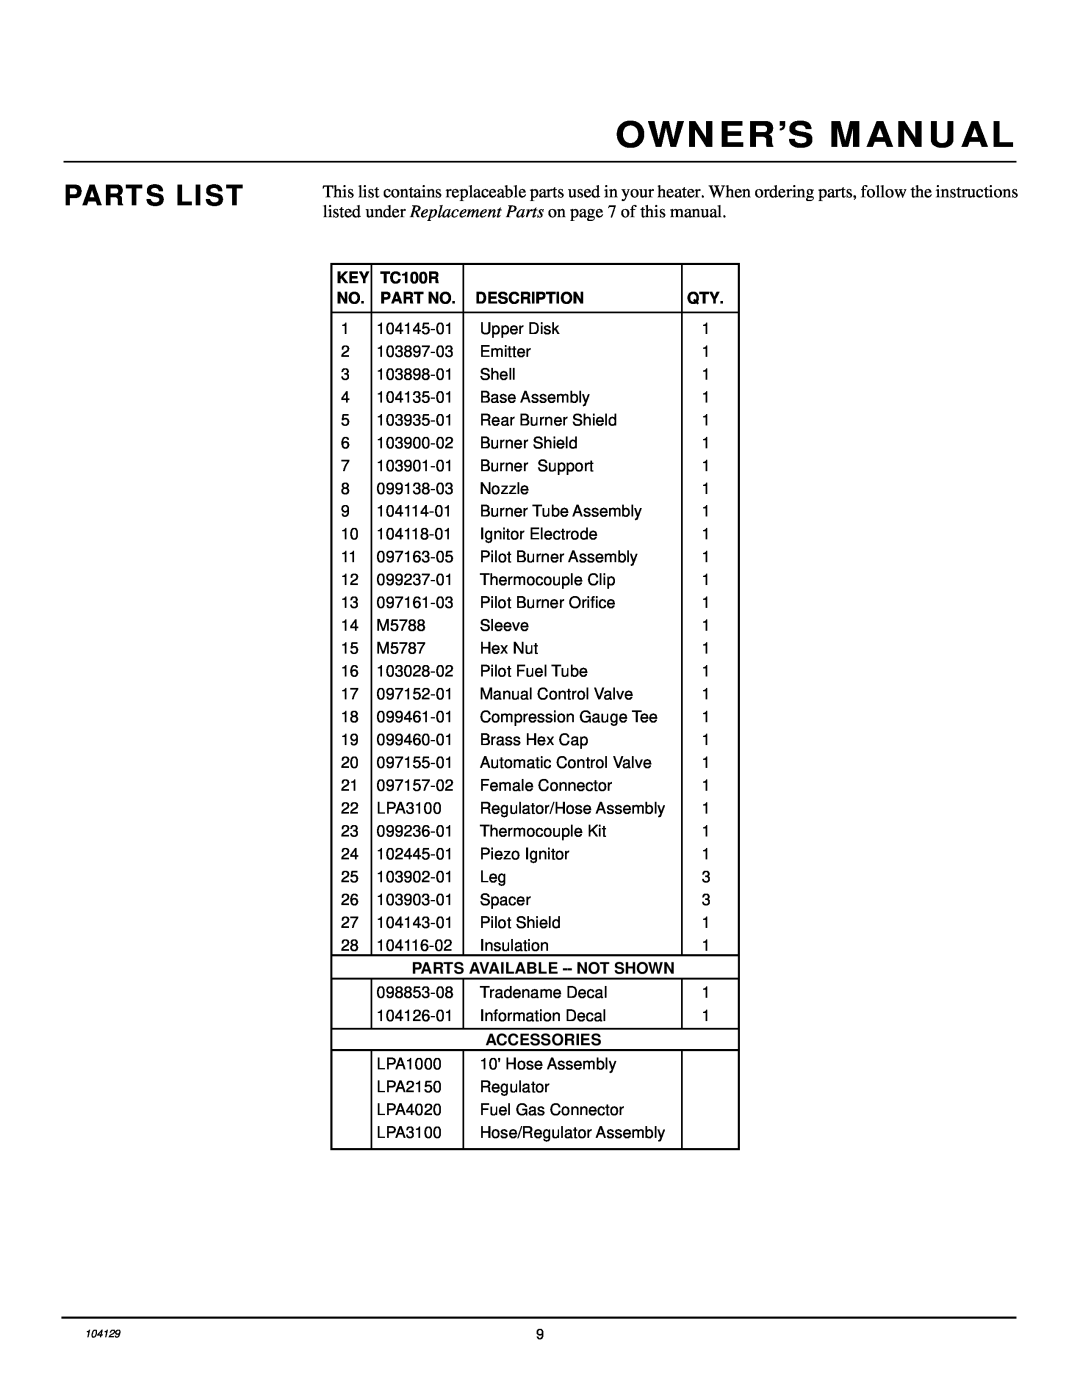 Desa TC100R owner manual Parts List, Description, Parts Available --Not Shown, Accessories 